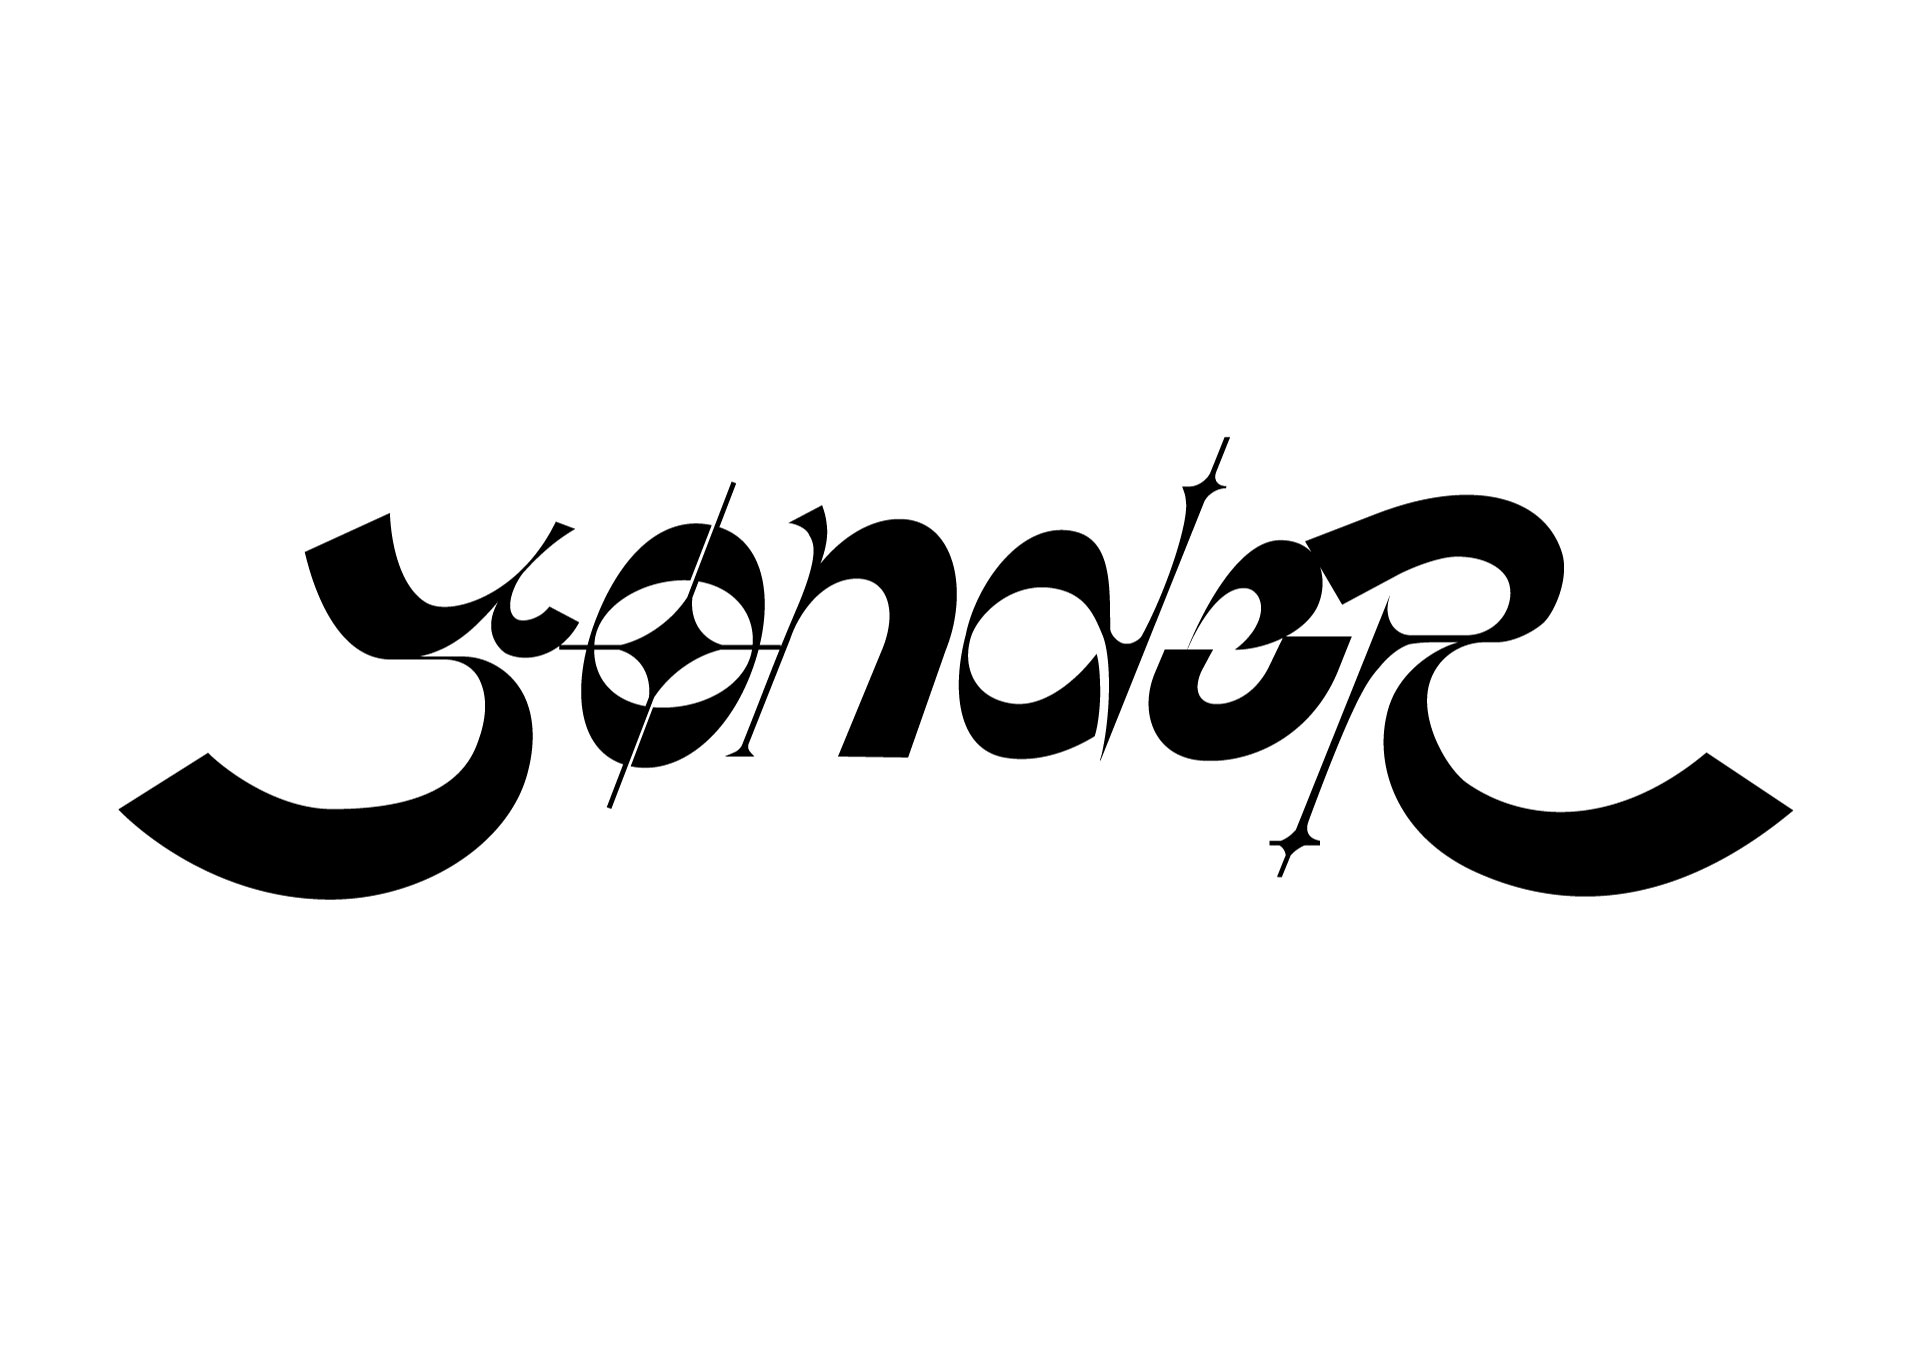 지애가 디자인한 Yonde 타이포그래피입니다. EP 모든 곡의 타이포그래피를 제작했죠!